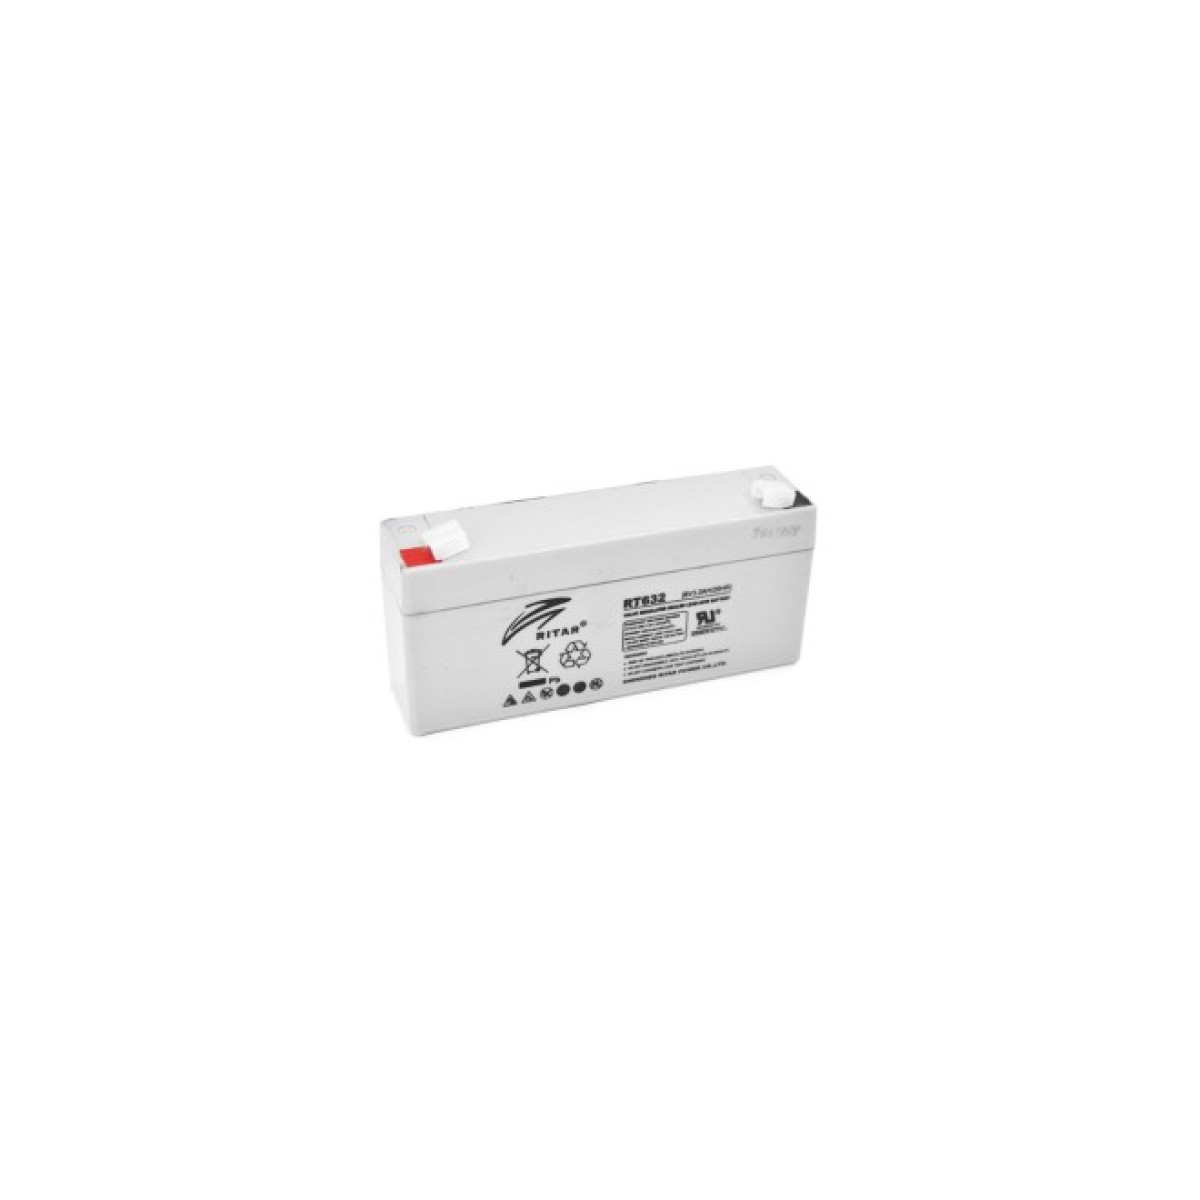 Батарея к ИБП Ritar AGM RT632, 6V-3.2Ah (RT632) 256_256.jpg